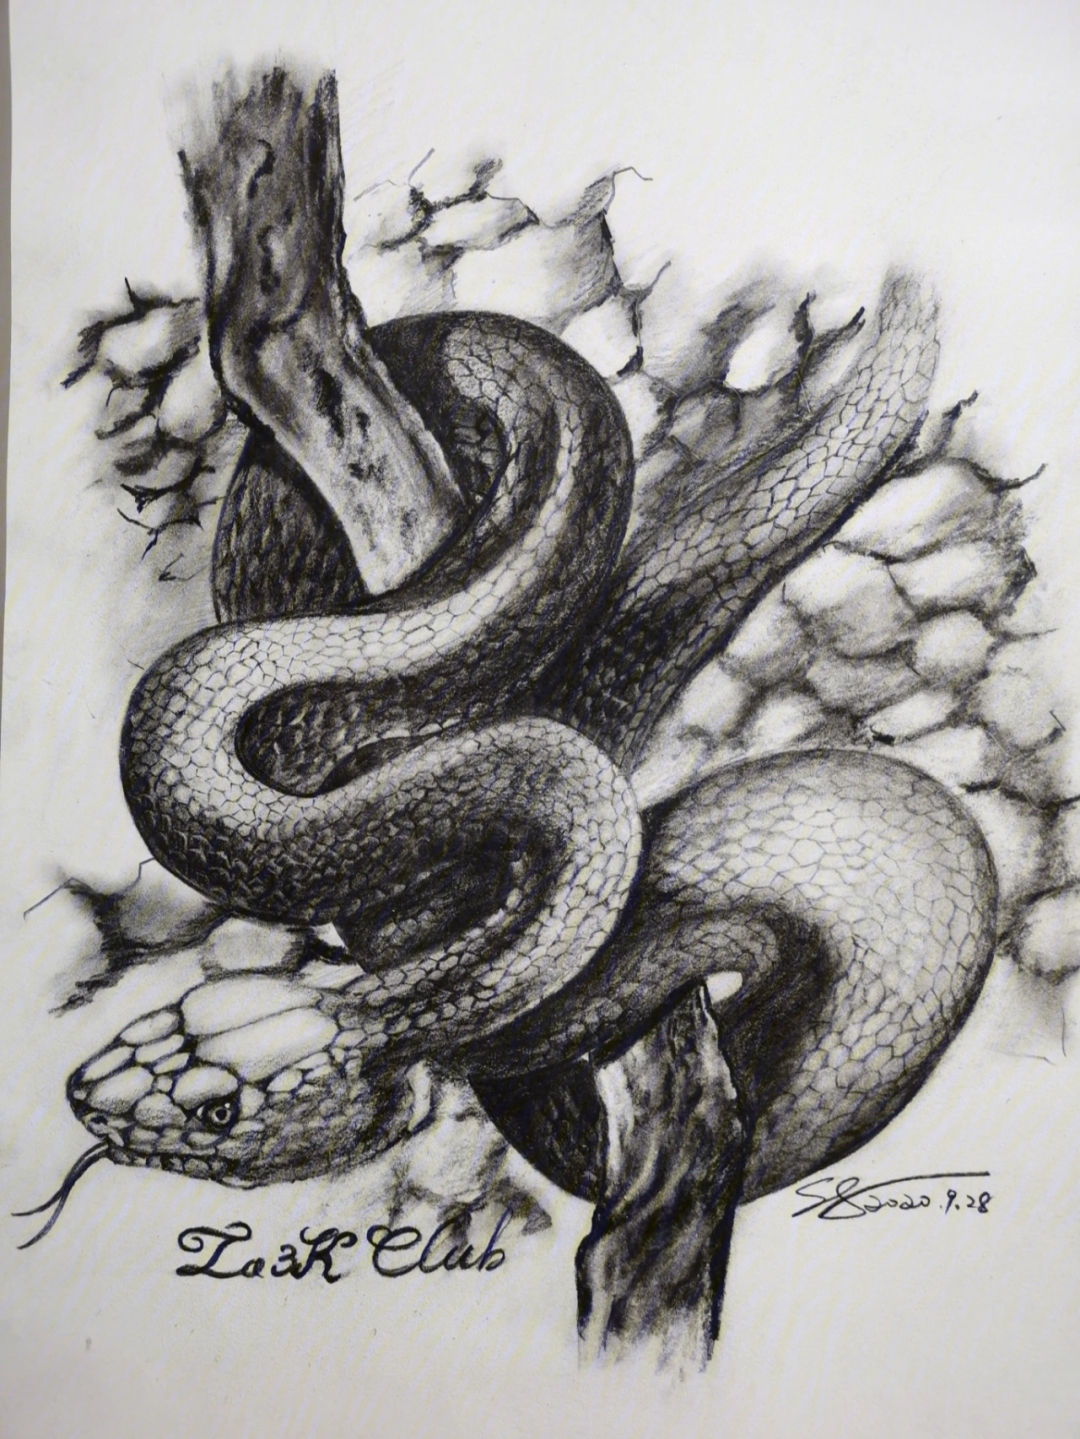 素描巨蛇图片